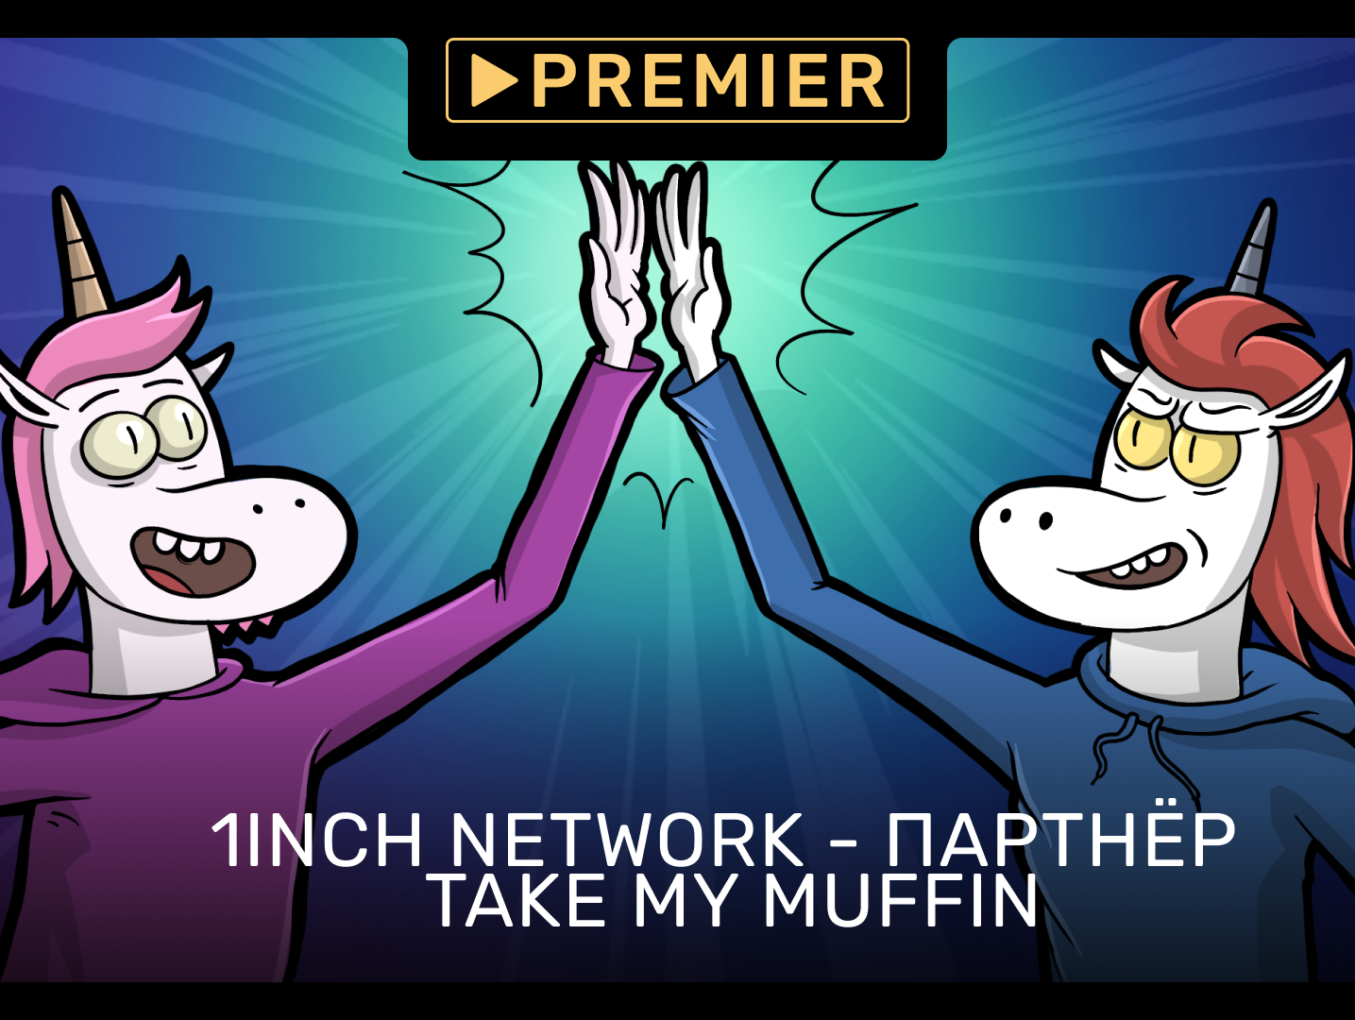 Take my muffin 2. Take my Muffin. Take my Muffin NFT. Take my Muffin draka.